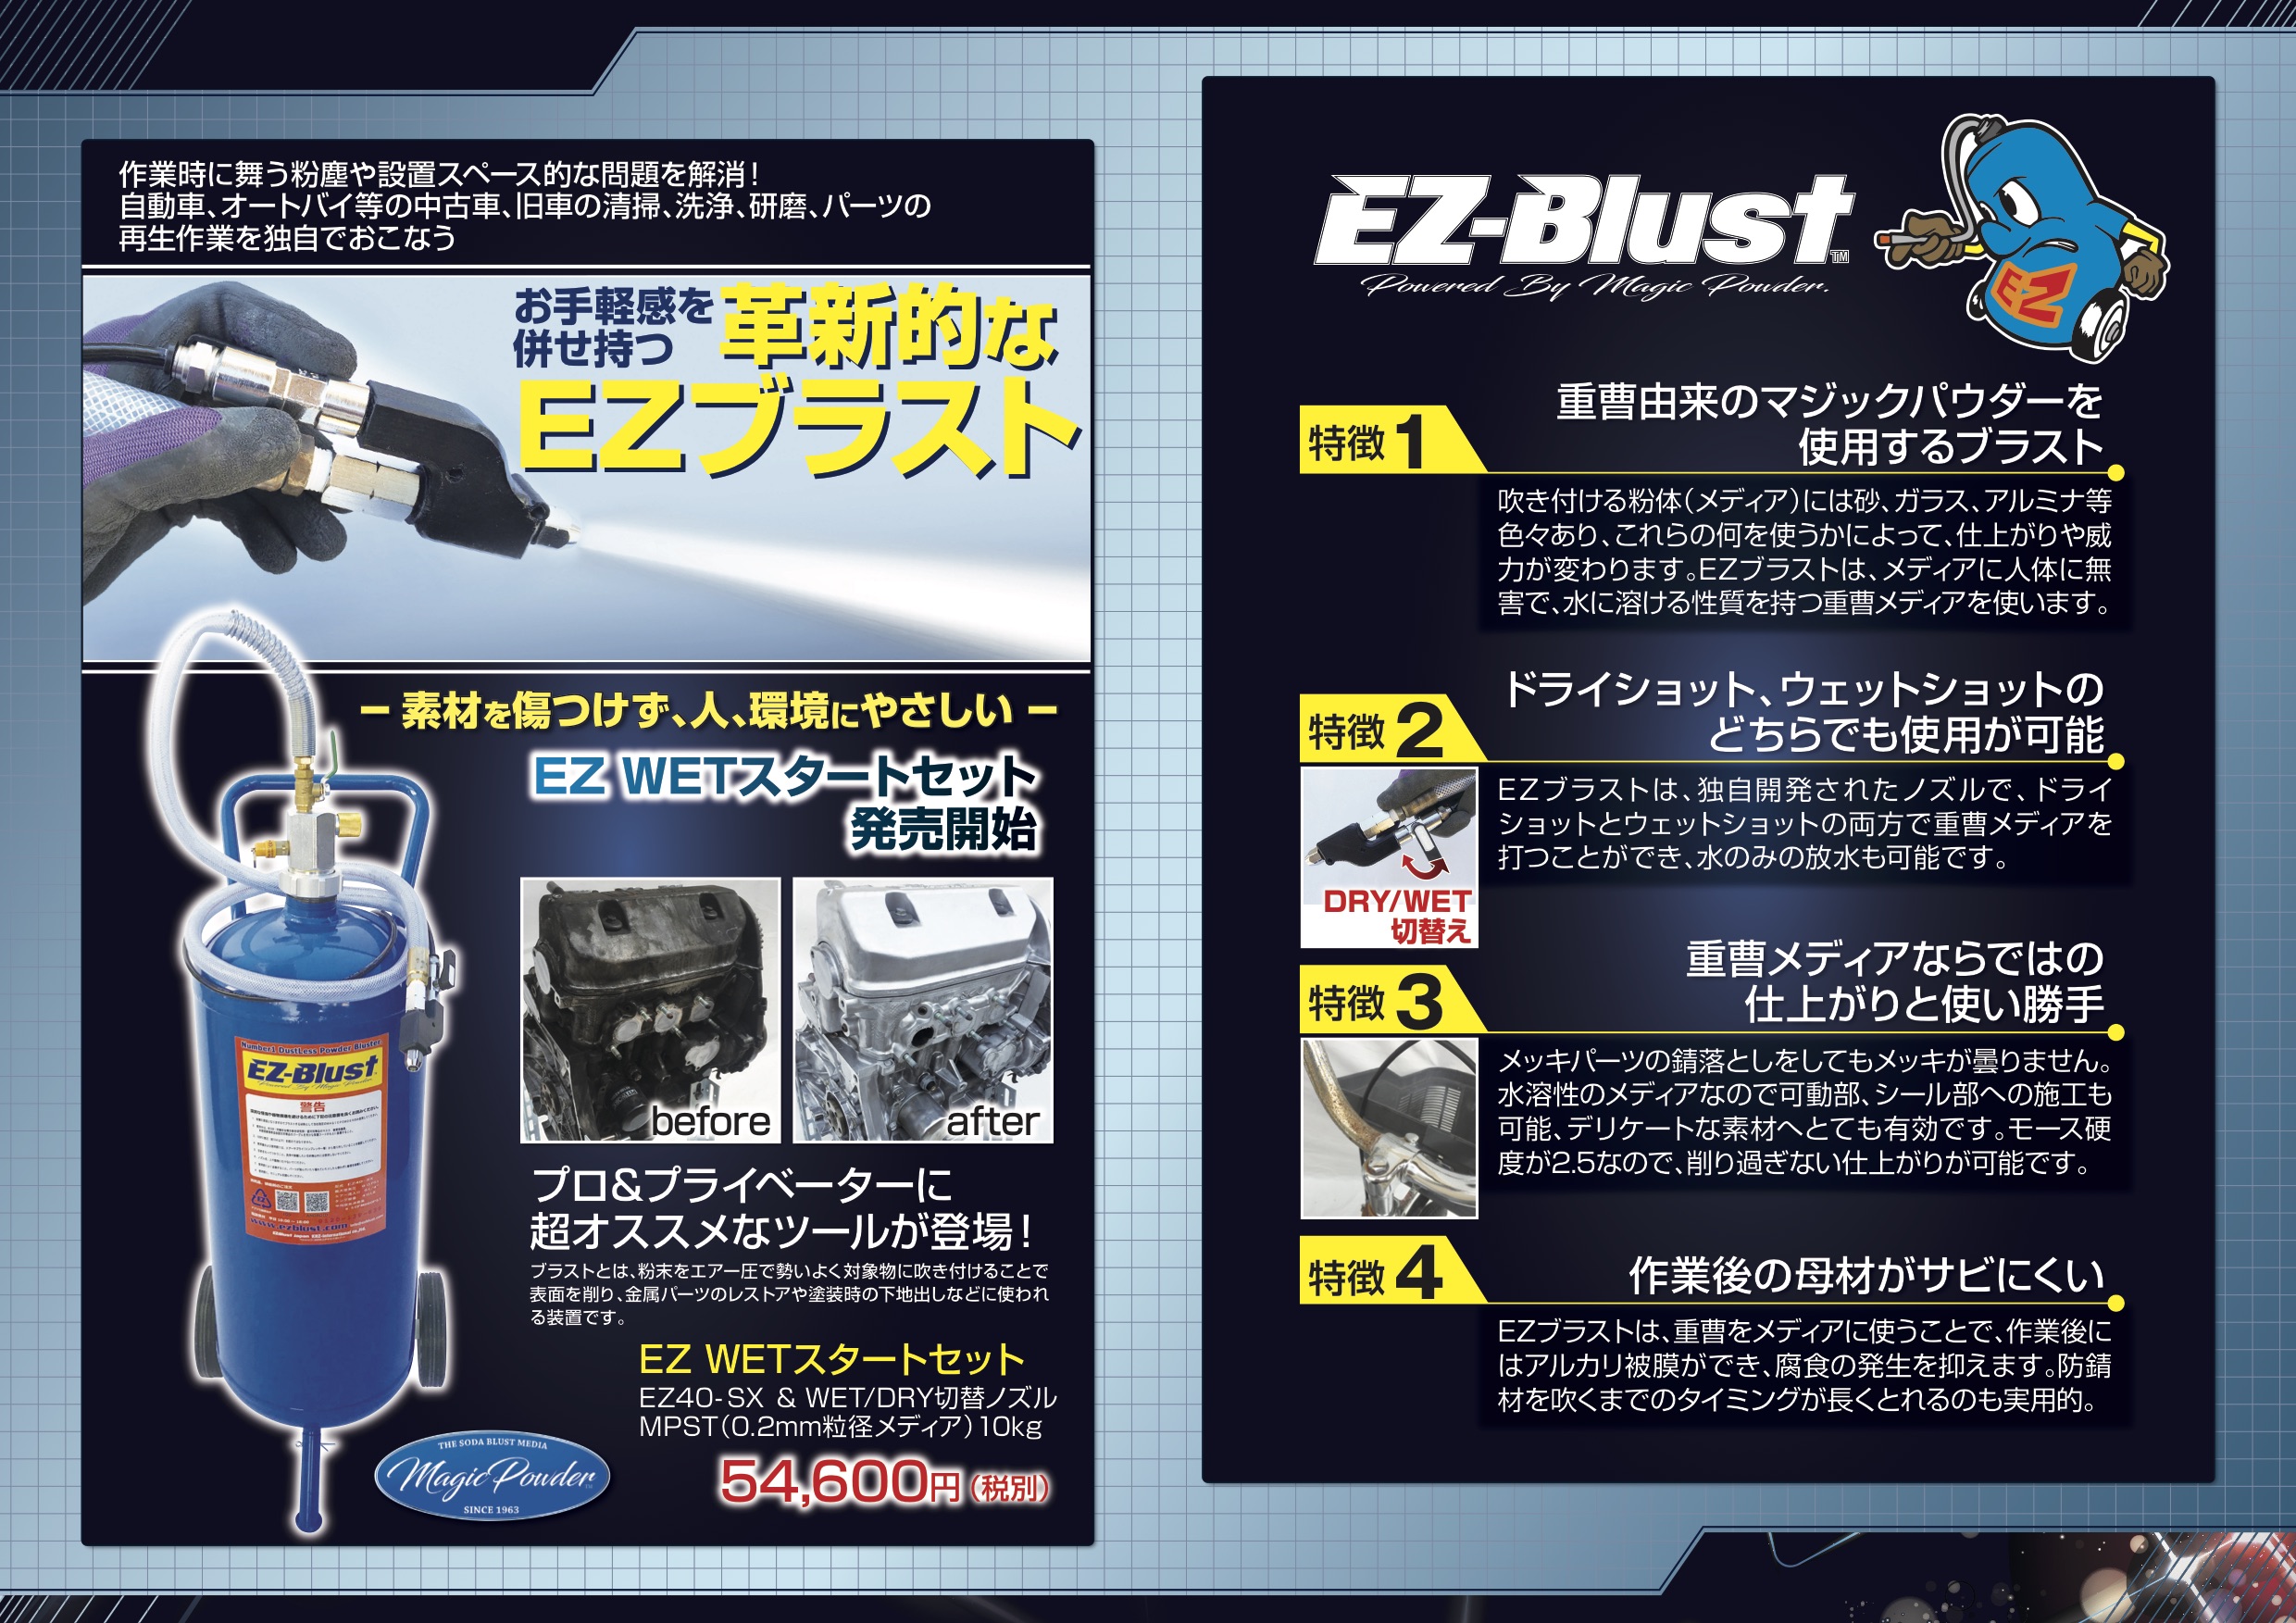 高級品 雑誌掲載 毎日売れてます 話題 EZ blust EZブラスト 高圧洗浄器